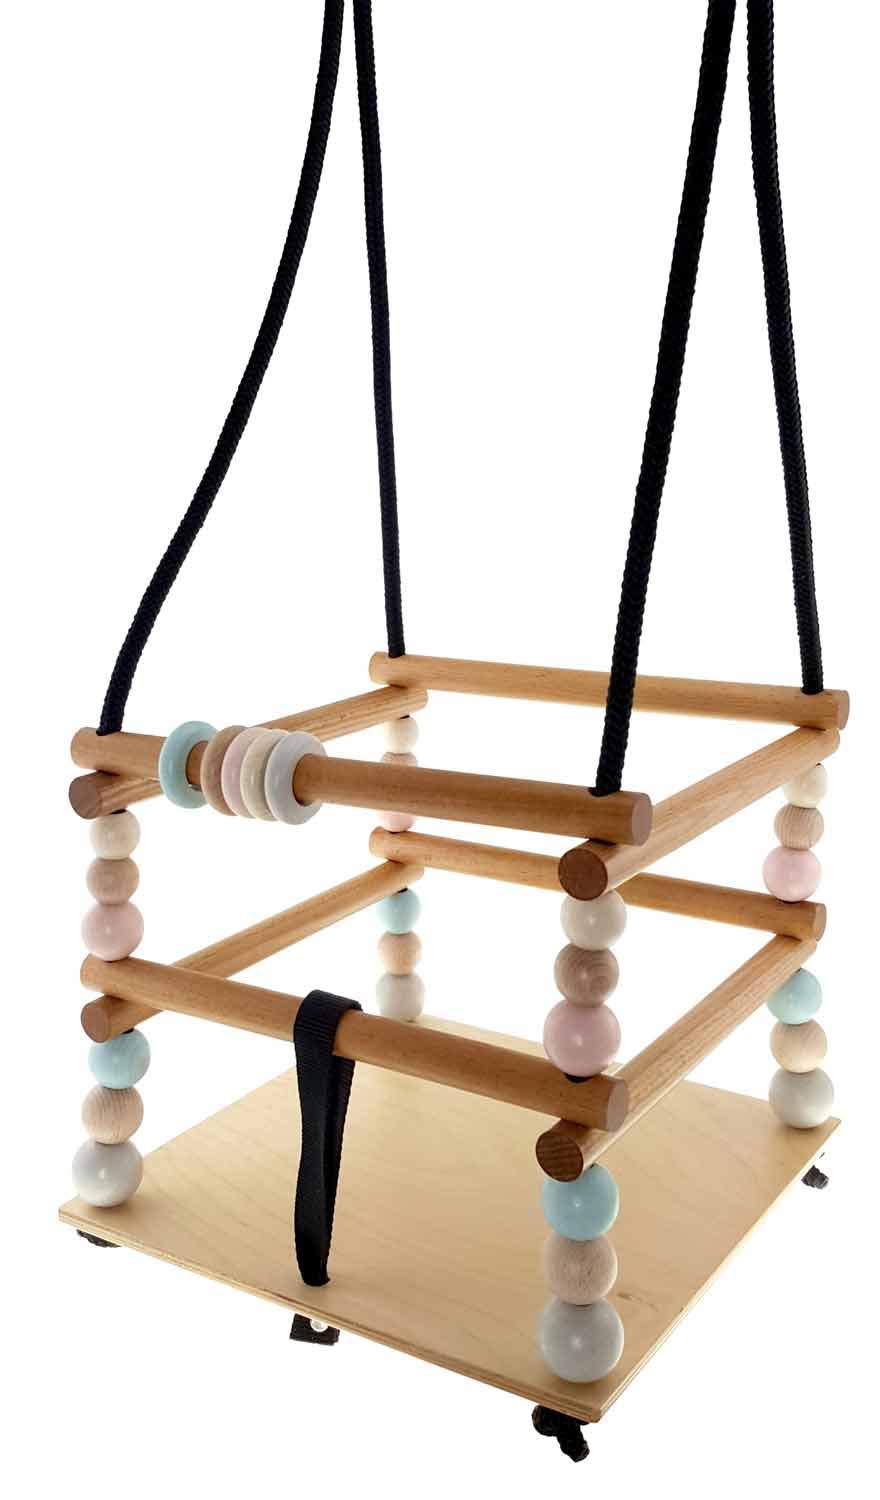 Hess Holzspielzeug 31106 - Gitterschaukel aus Holz, Nature Serie, handgefertigt, für Kleinkinder ab 12 Monaten, für unbeschwertes Schaukelvergnügen im Haus, auf der Terrasse und im Garten